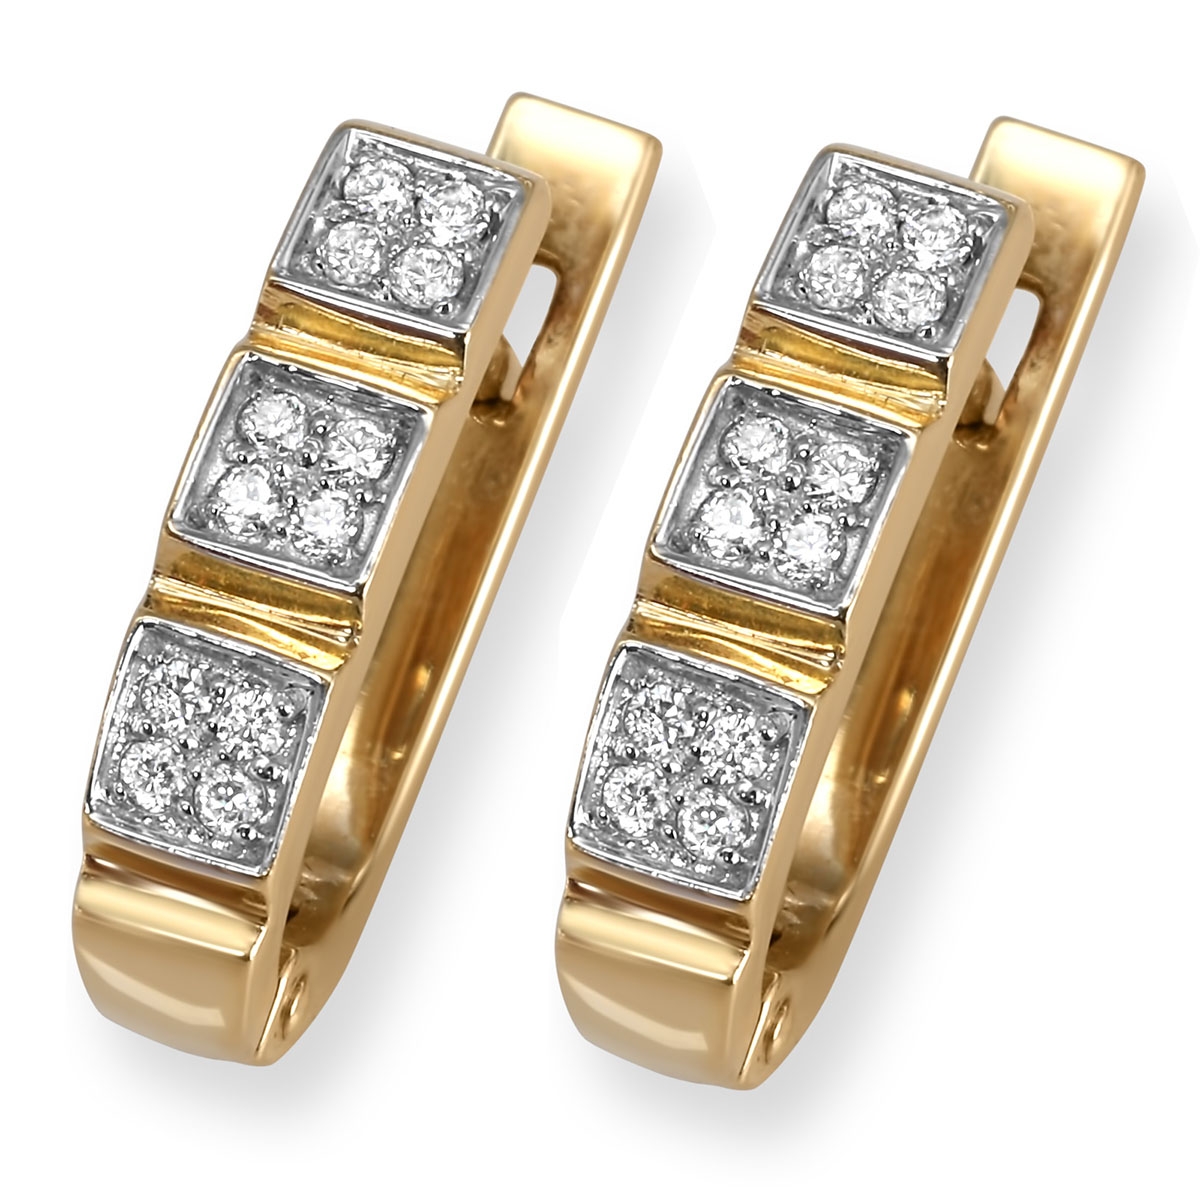 14K Gold Earrings With Designer Diamond Settings - 1